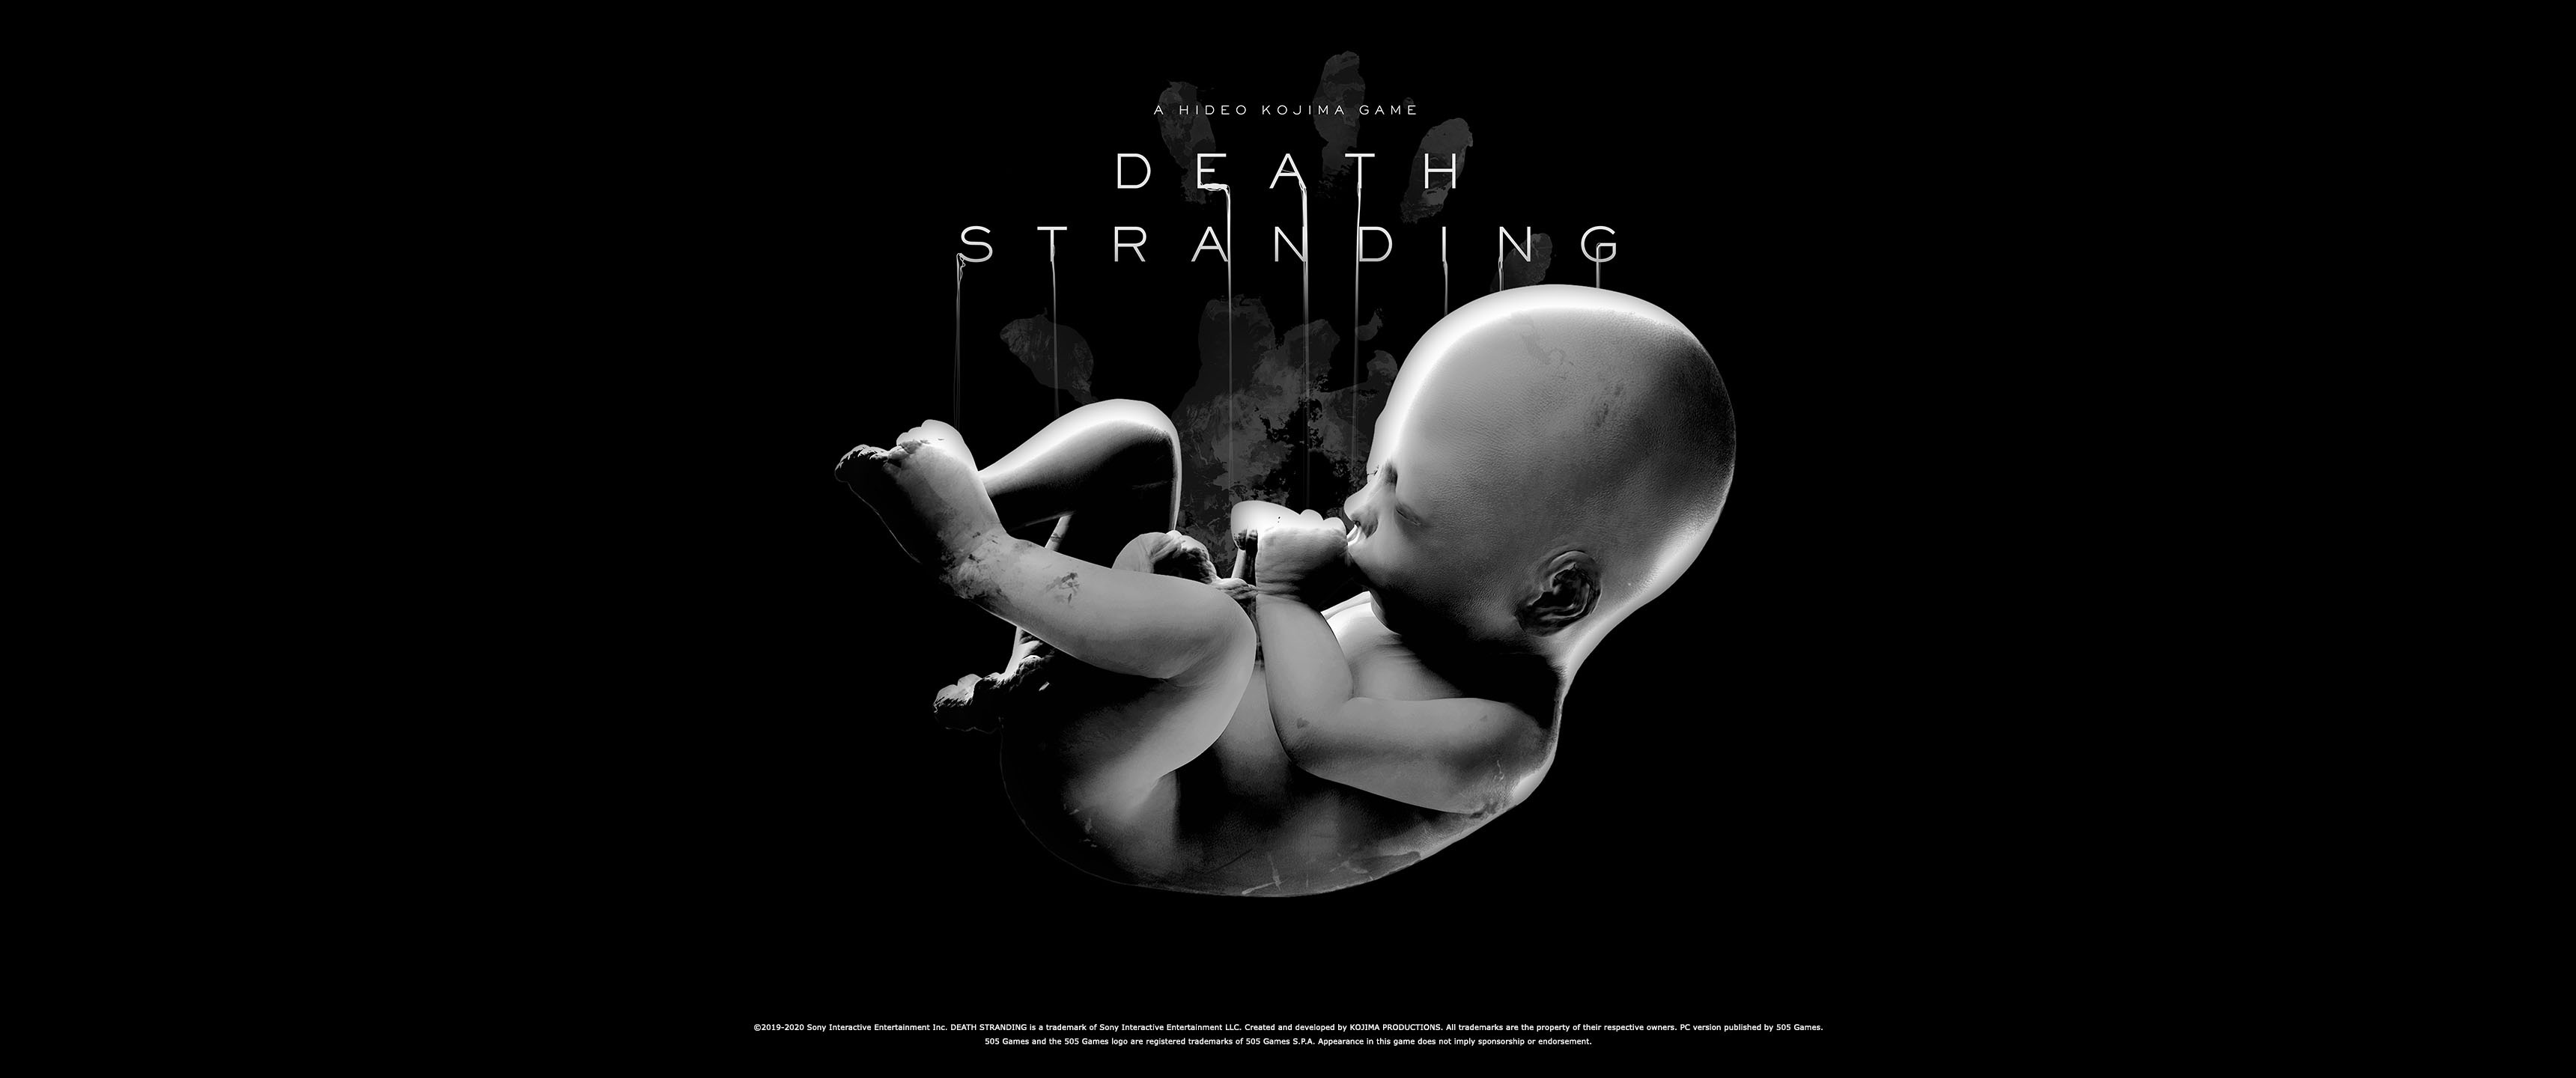 Hideo Kojima is not a fan of “Director's Cut” label for 'Death Stranding